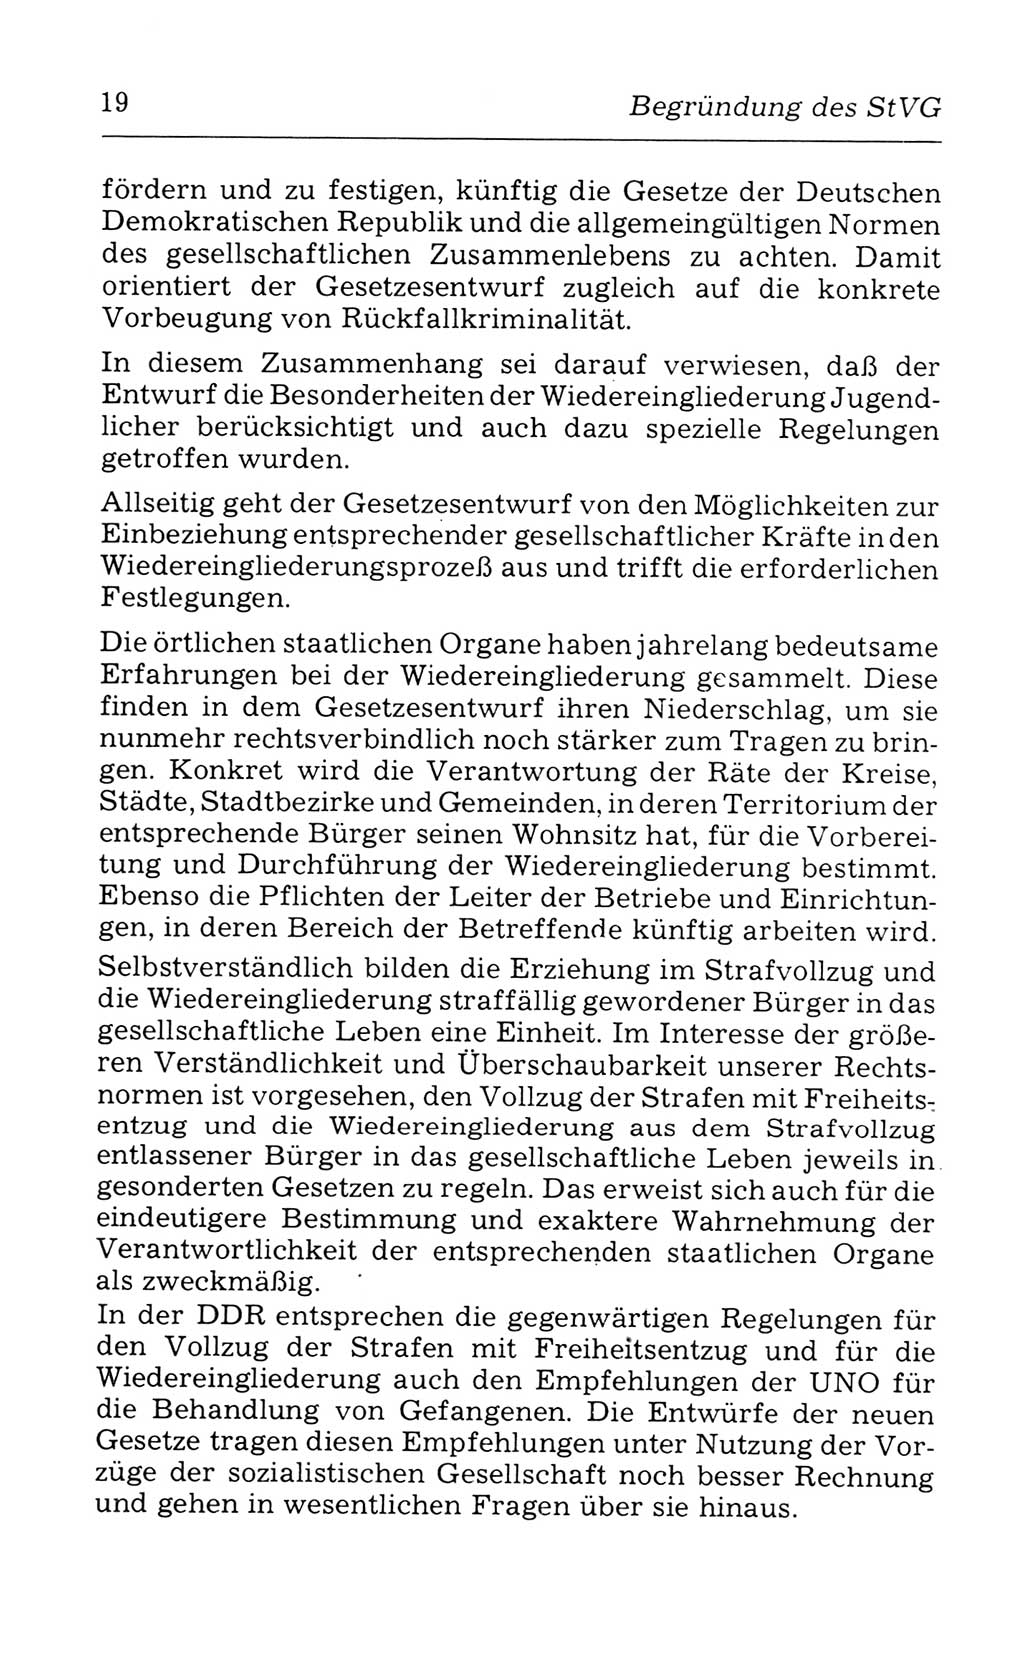 Kommentar zum Strafvollzugsgesetz [(StVG) Deutsche Demokratische Republik (DDR)] 1980, Seite 19 (Komm. StVG DDR 1980, S. 19)